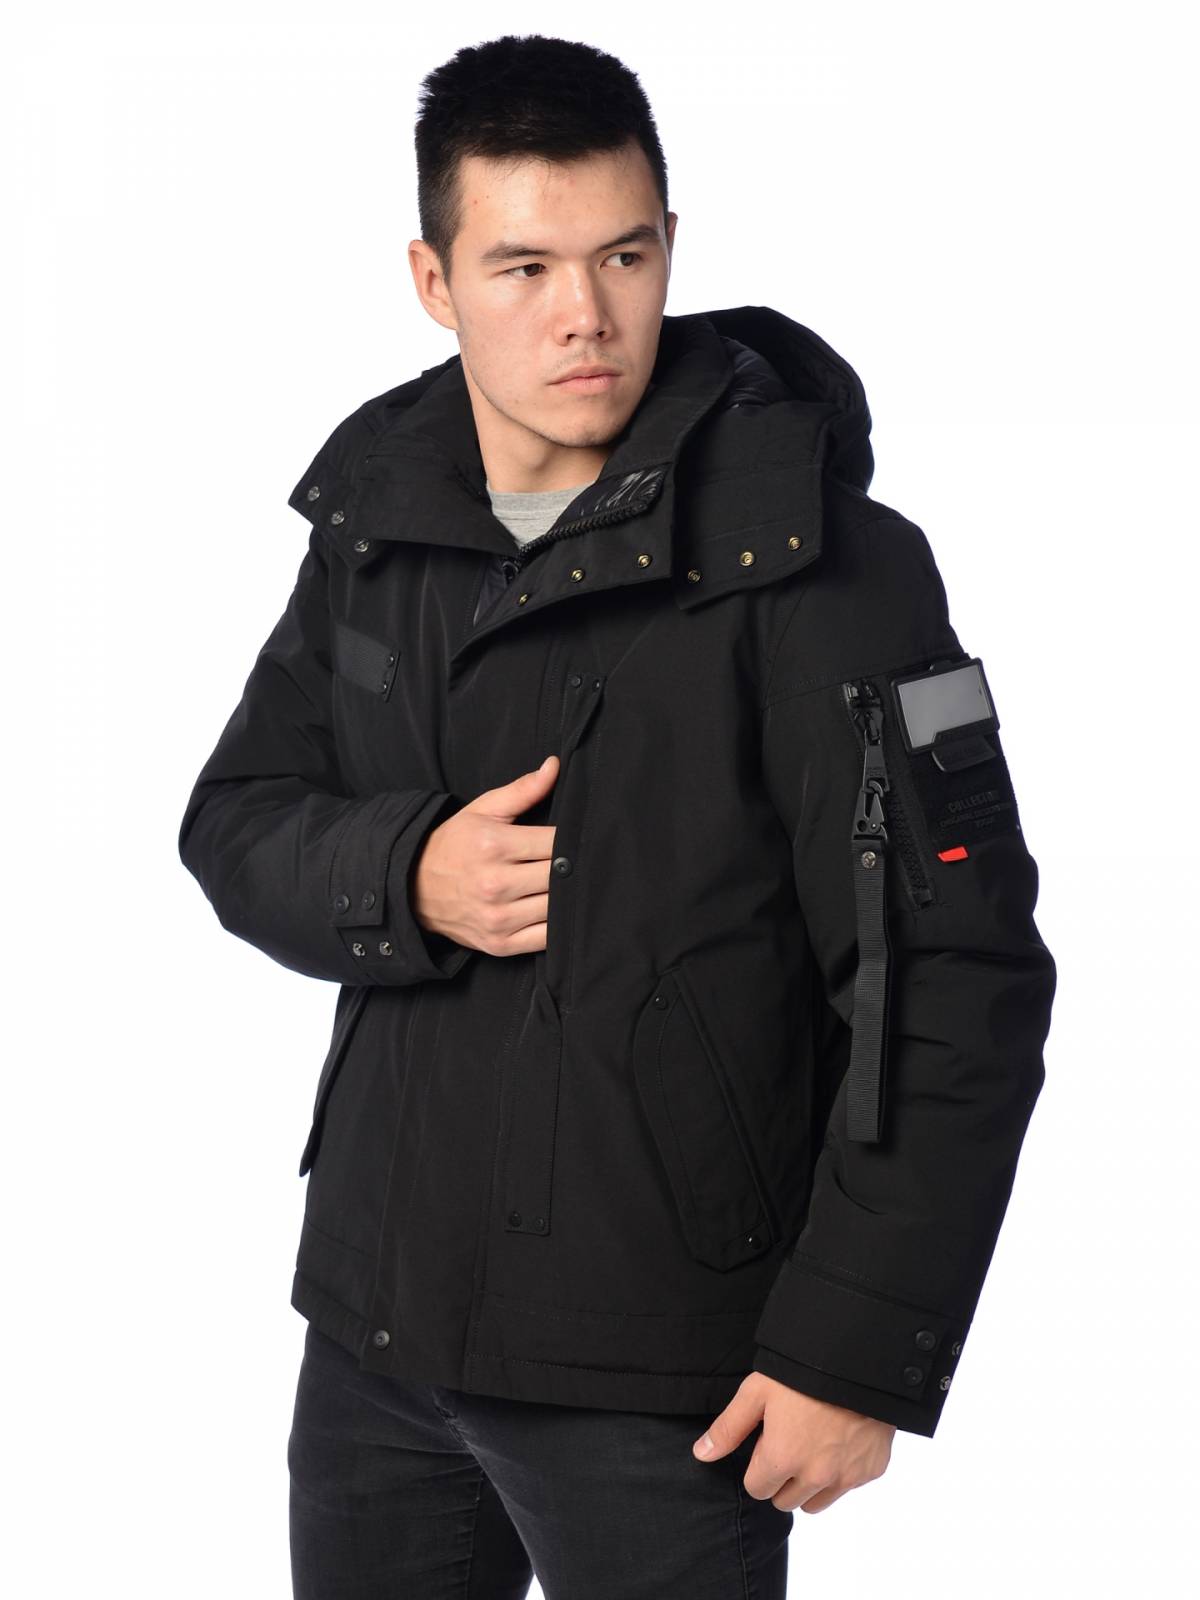 Зимняя куртка мужская Shark Force 3991 черная 48 RU